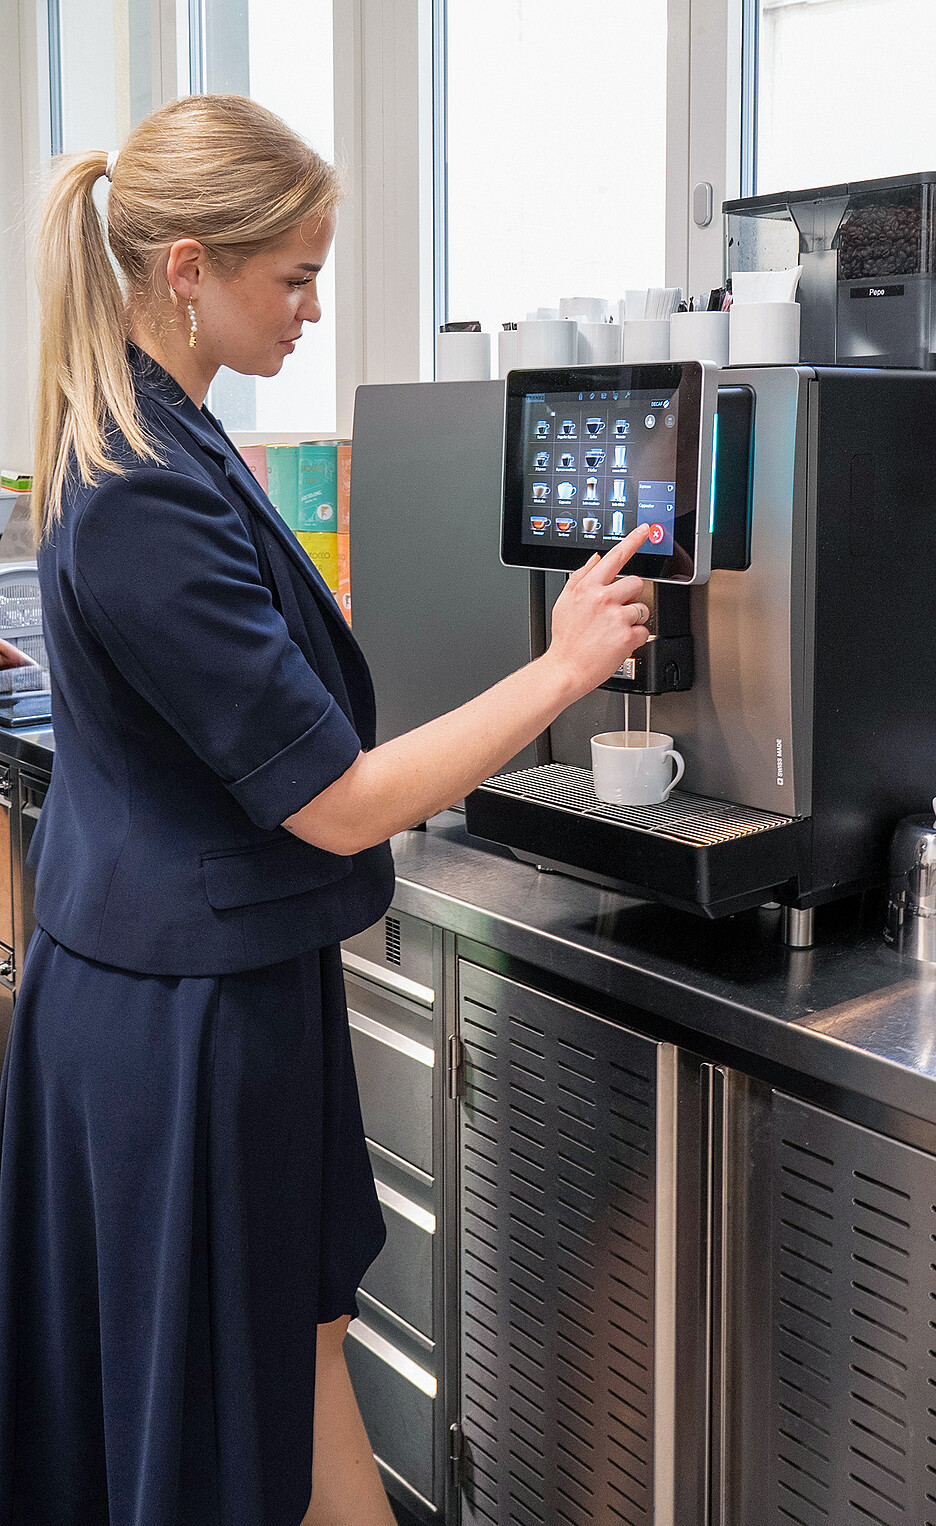 Konzipiert für grosse Aufkommen, bietet die Franke A800 Kaffeemaschine mit dem Drei-Boiler-System und intuitivem Bedienkonzept kompromisslose Qualität, Vielfalt und Leistung.